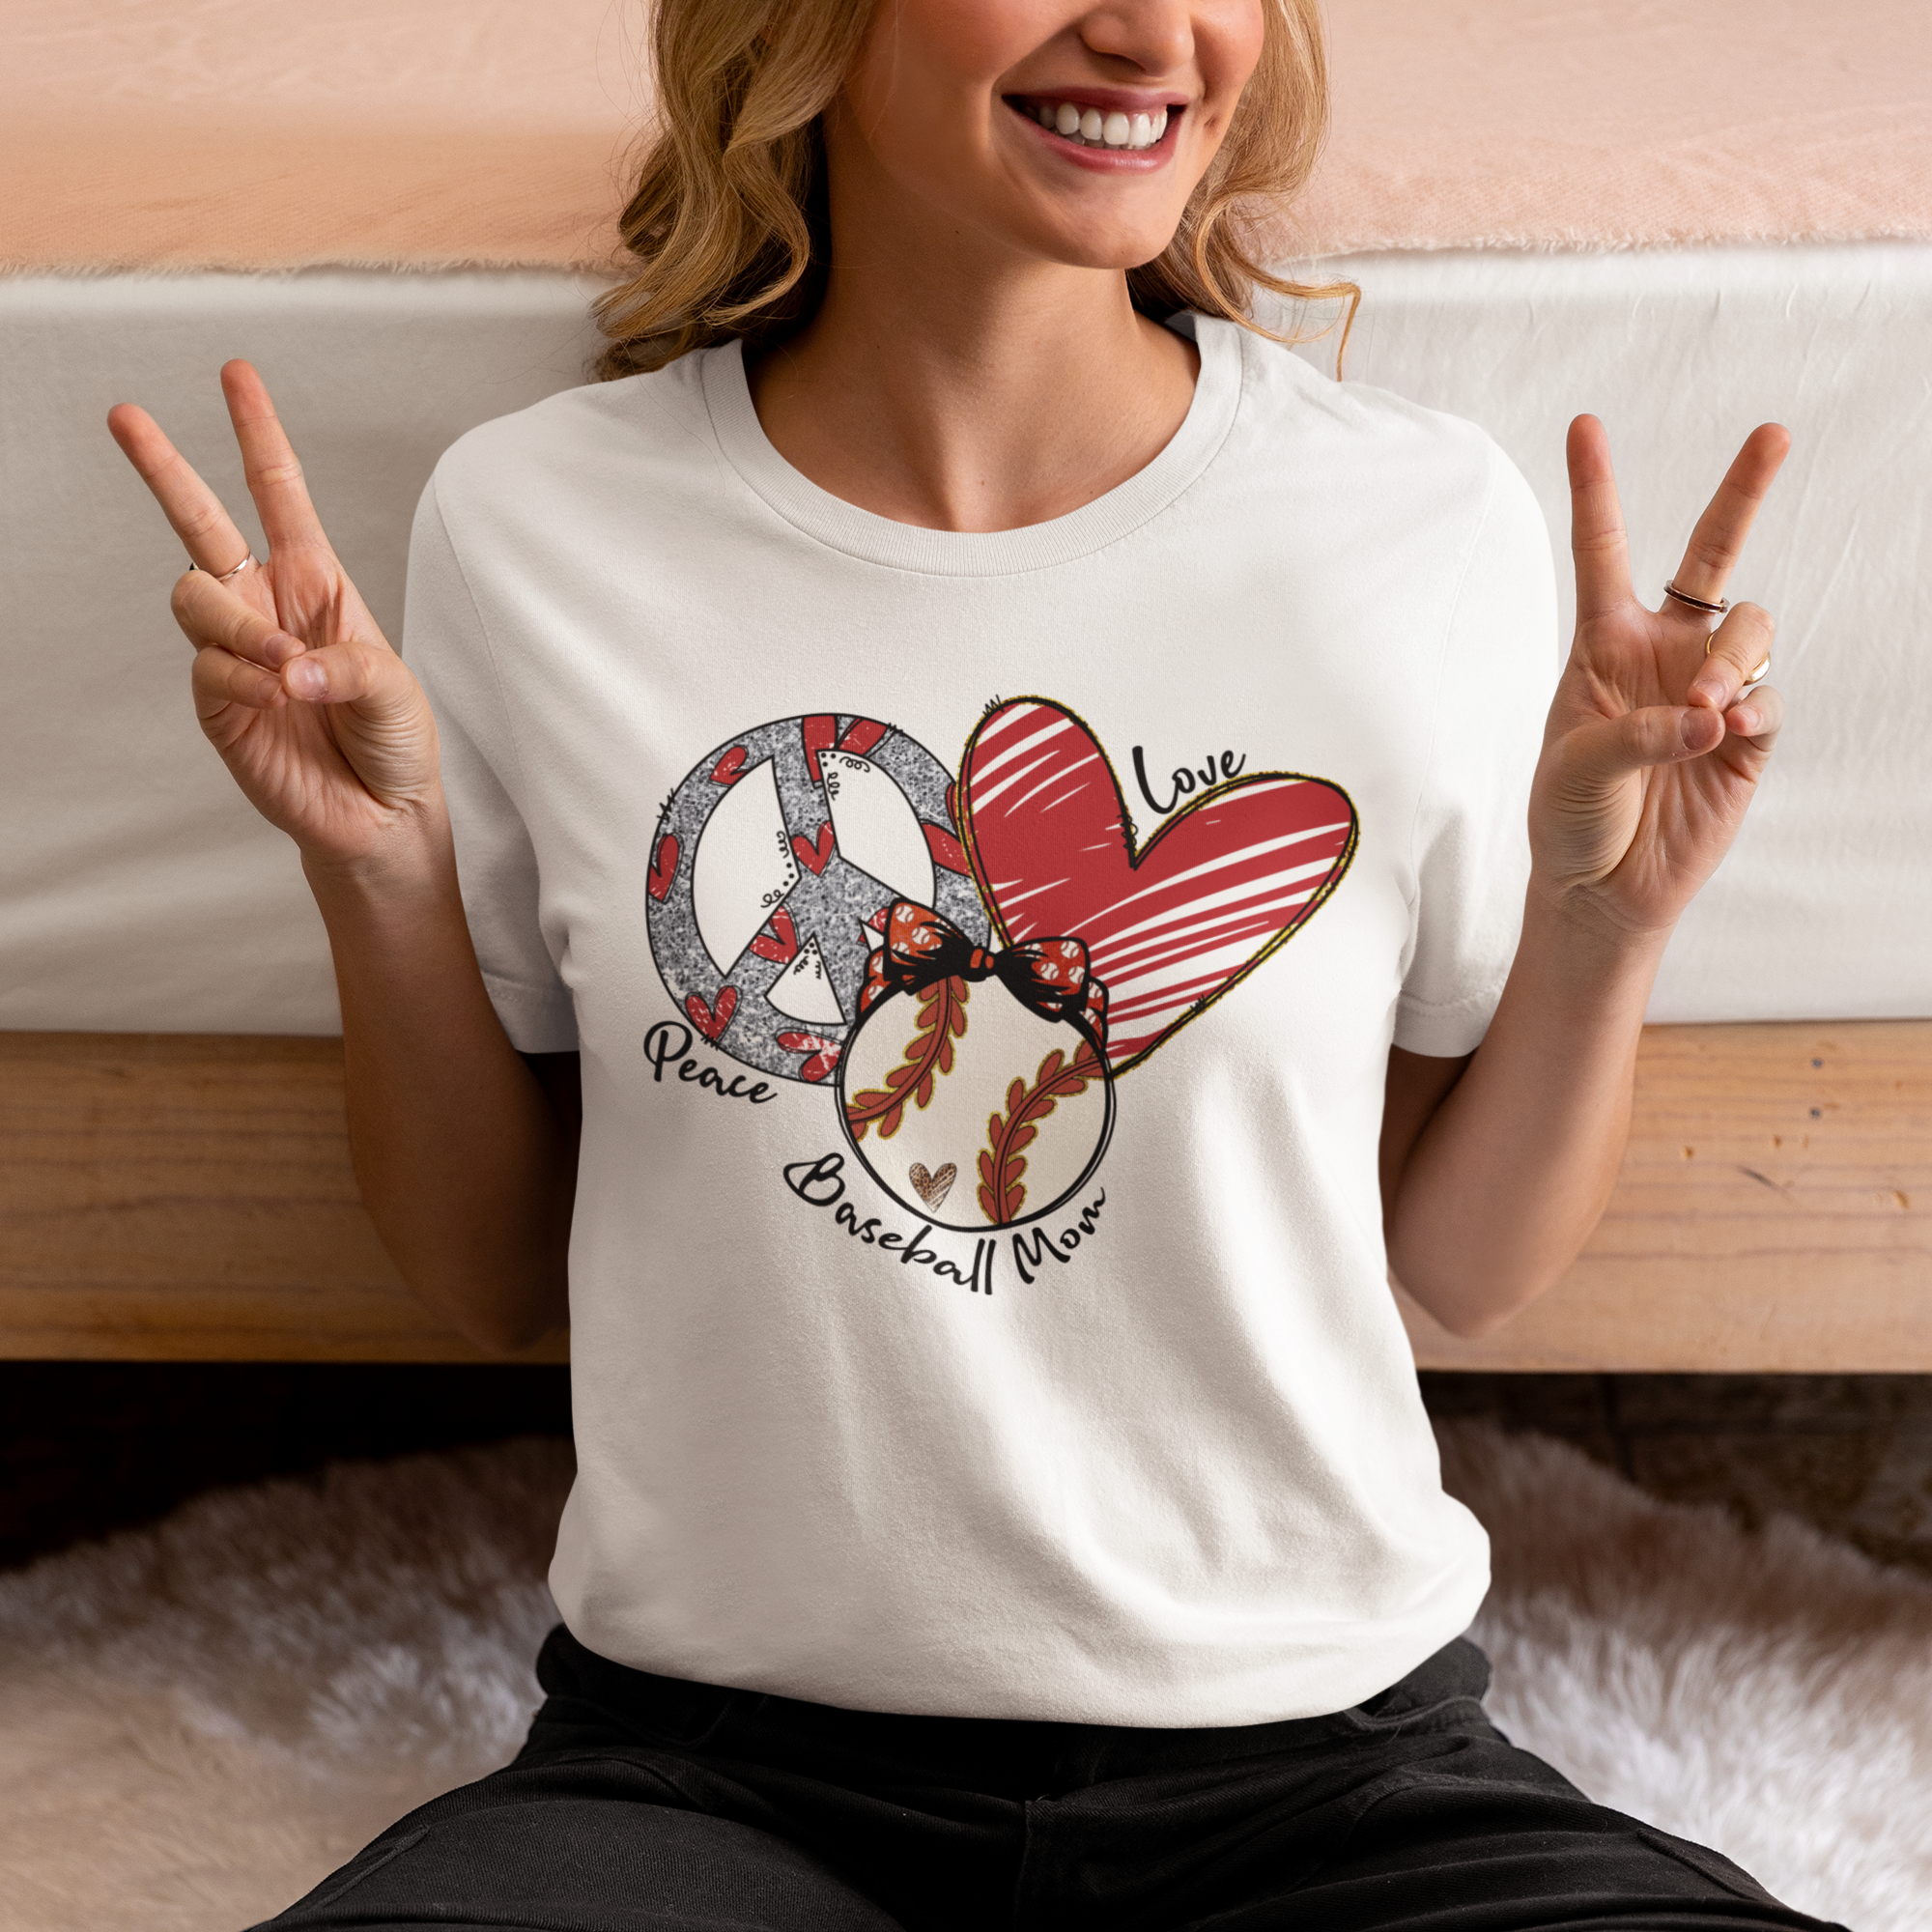 Baseball: Peace Love Baseball Mom - Cotton Short Sleeve T-Shirt